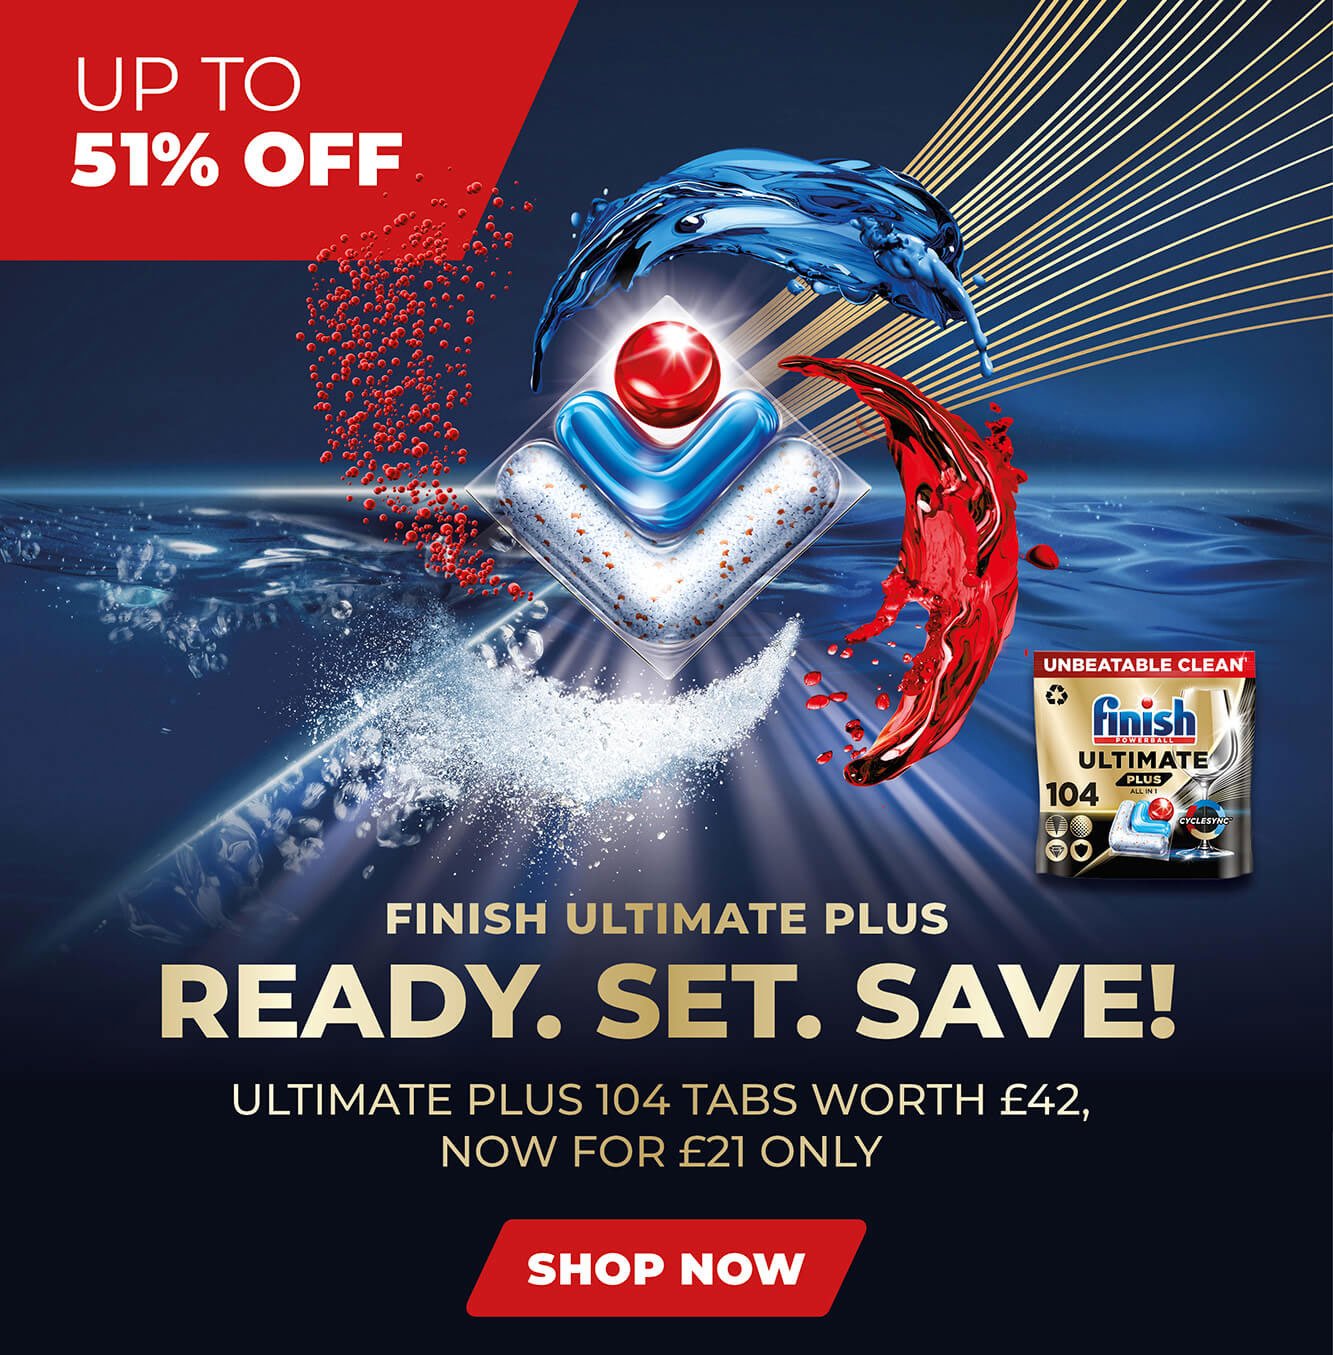 Finish: Finish Ultimate Plus is back on promo!